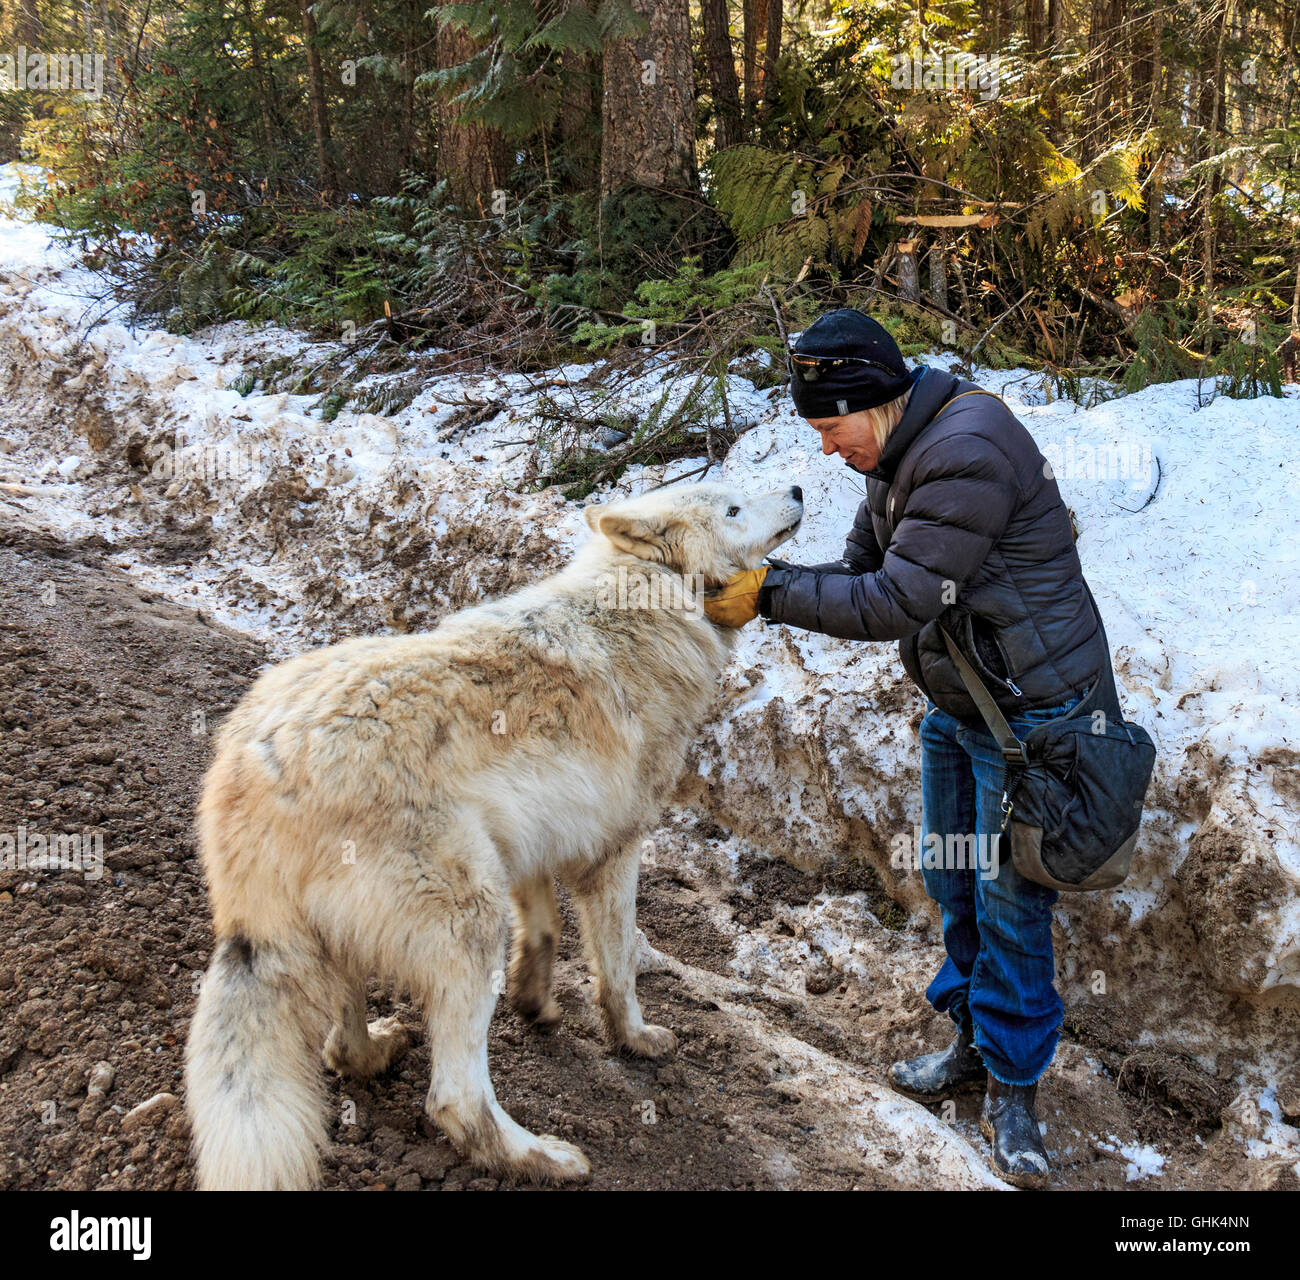 Reiseführer und Center Besitzer Shelley Black verbindet sich mit eines ihrer Wölfe bei einem Wolf-Spaziergang mit Besuchern im Wald in der Nähe von Golden BC. Stockfoto